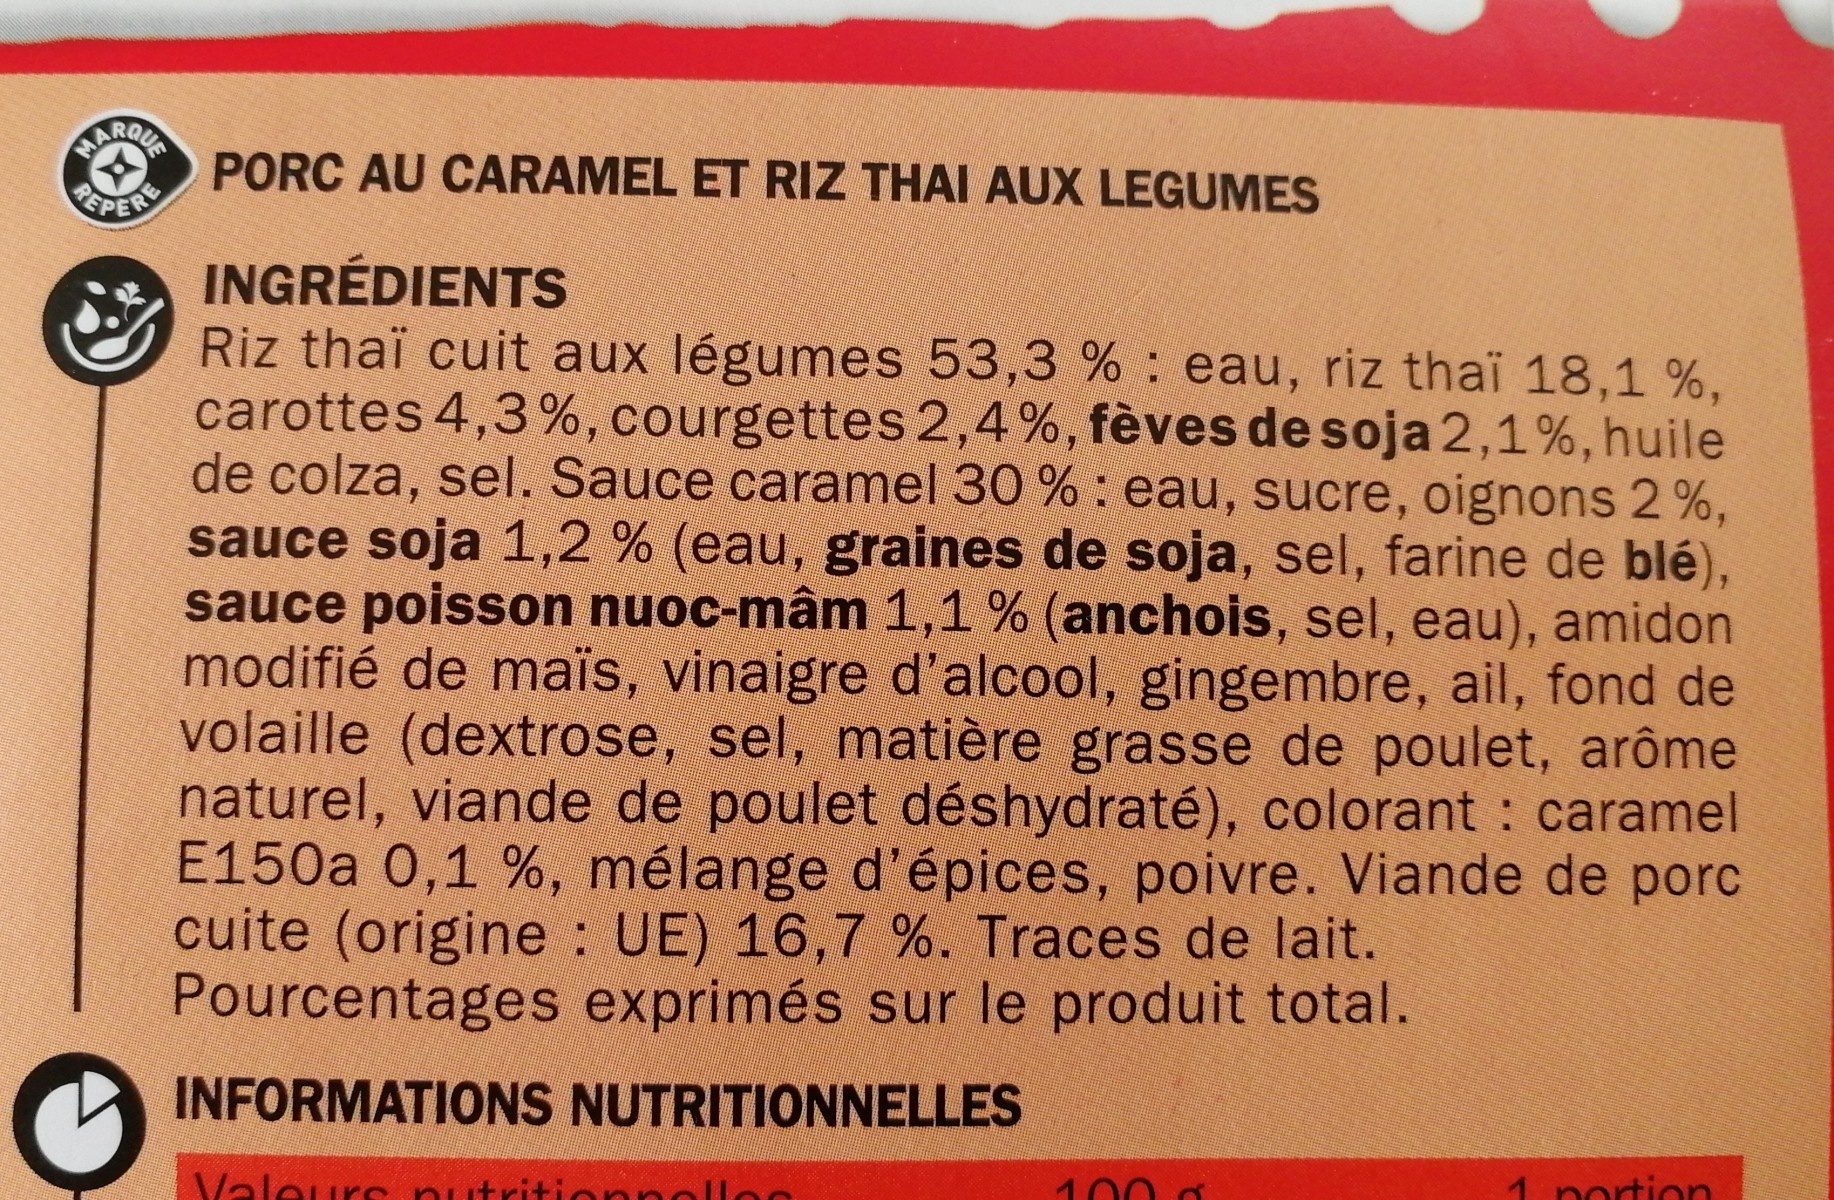 Porc au caramel et son riz thaï - Ingredients - fr